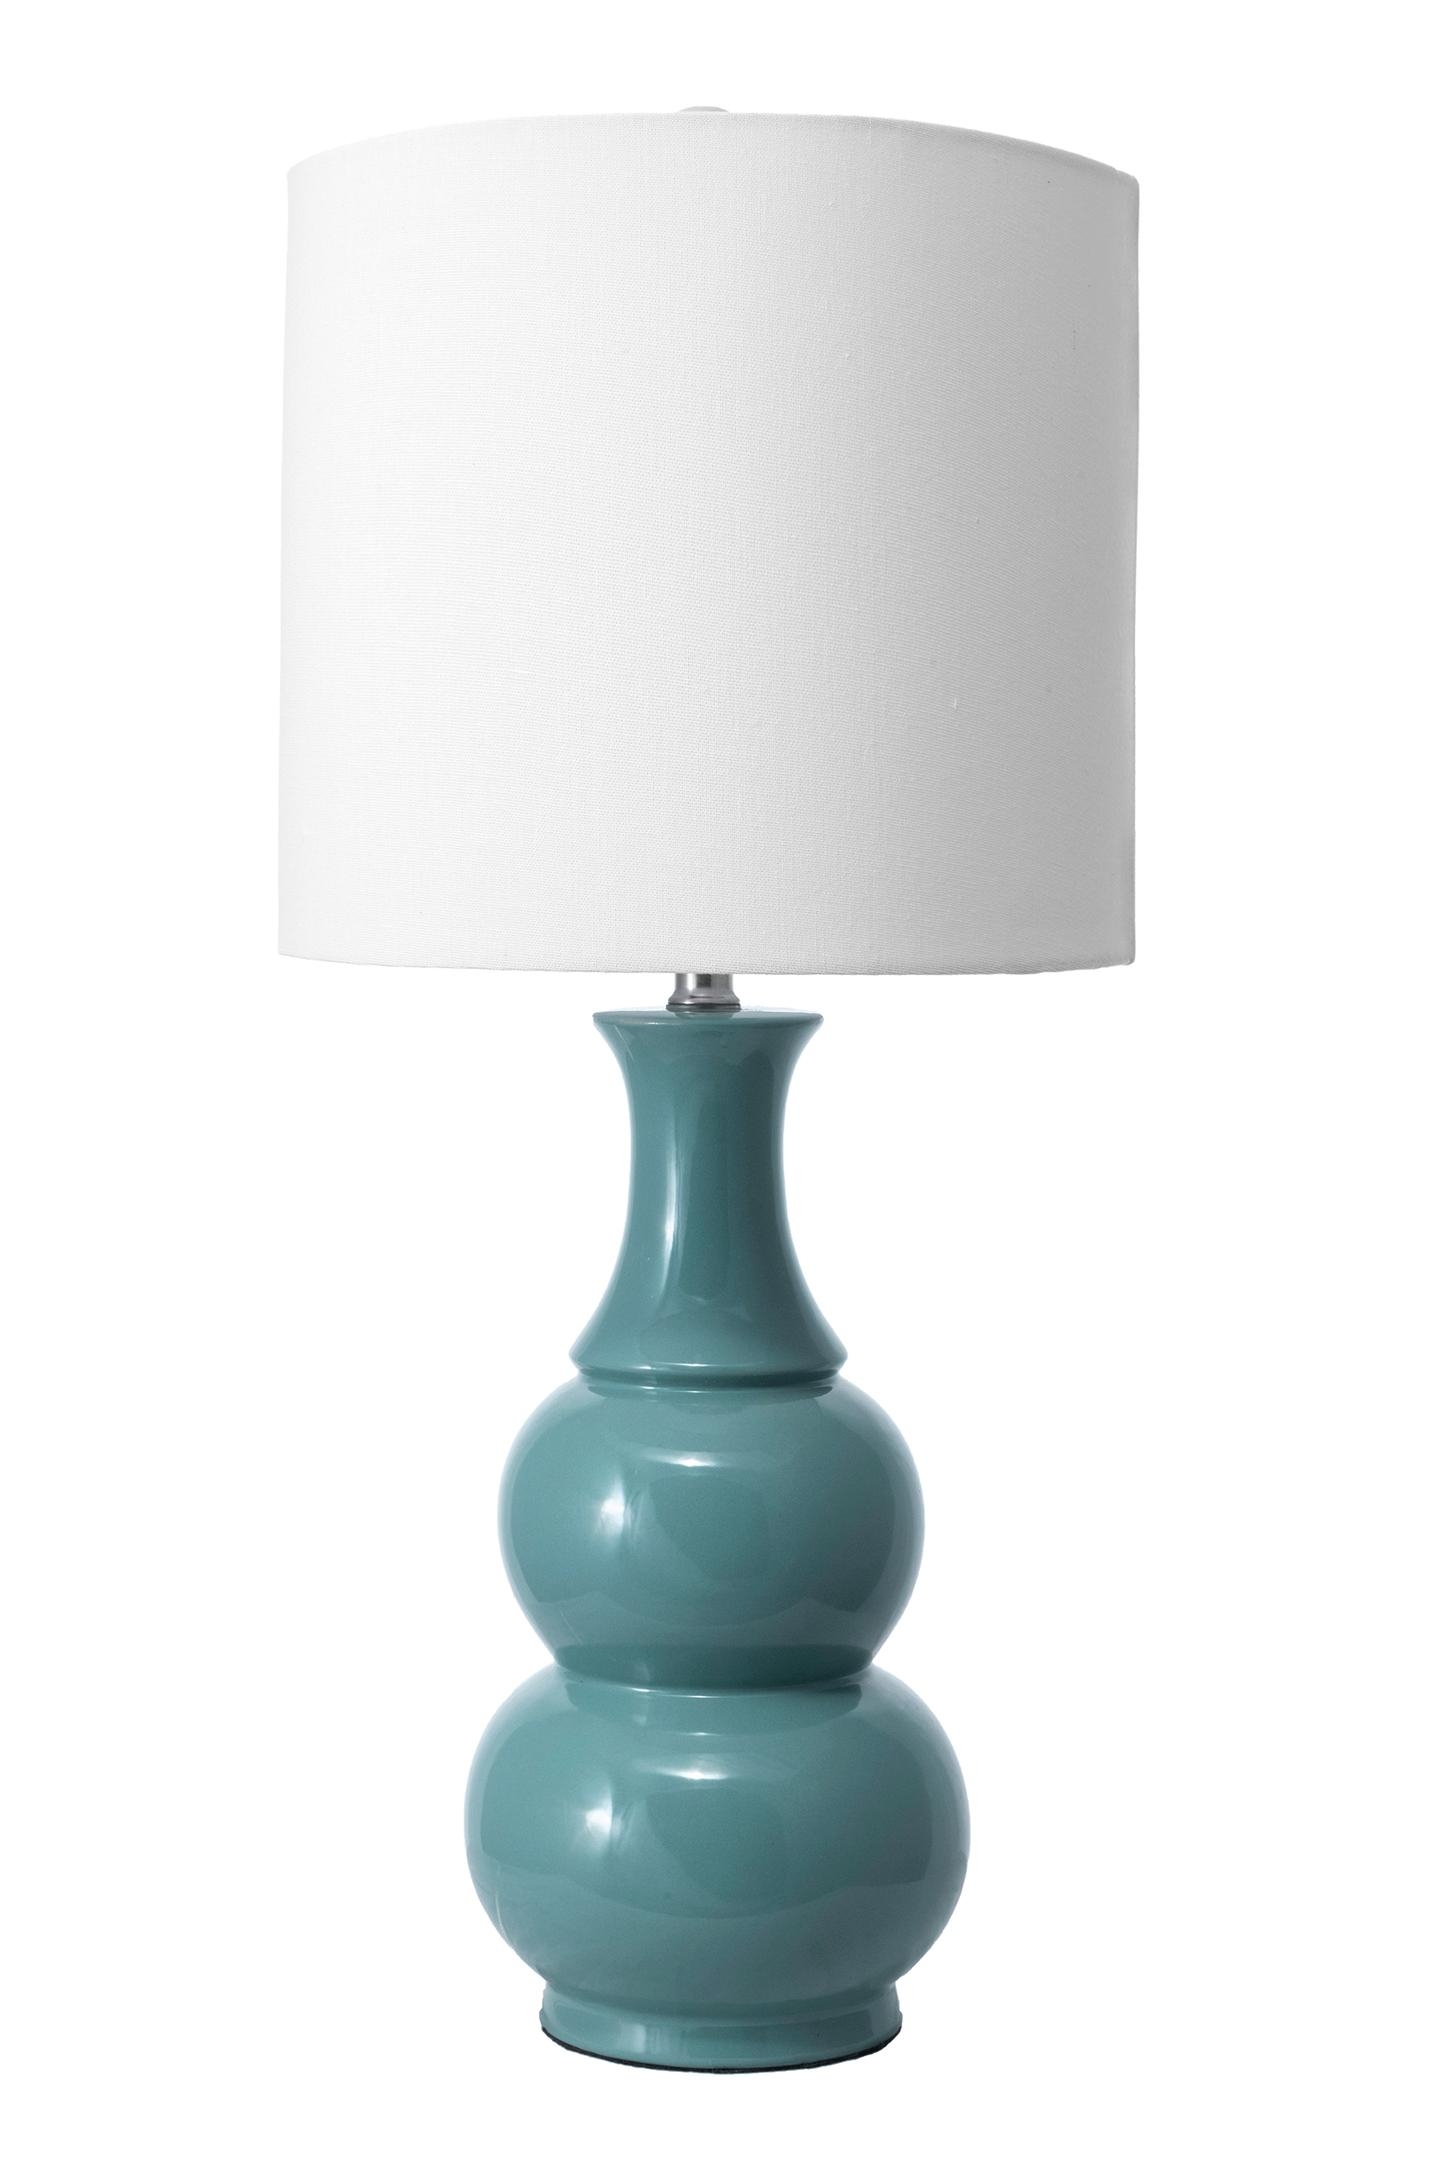 Indo 29" Ceramic Table Lamp - Image 2